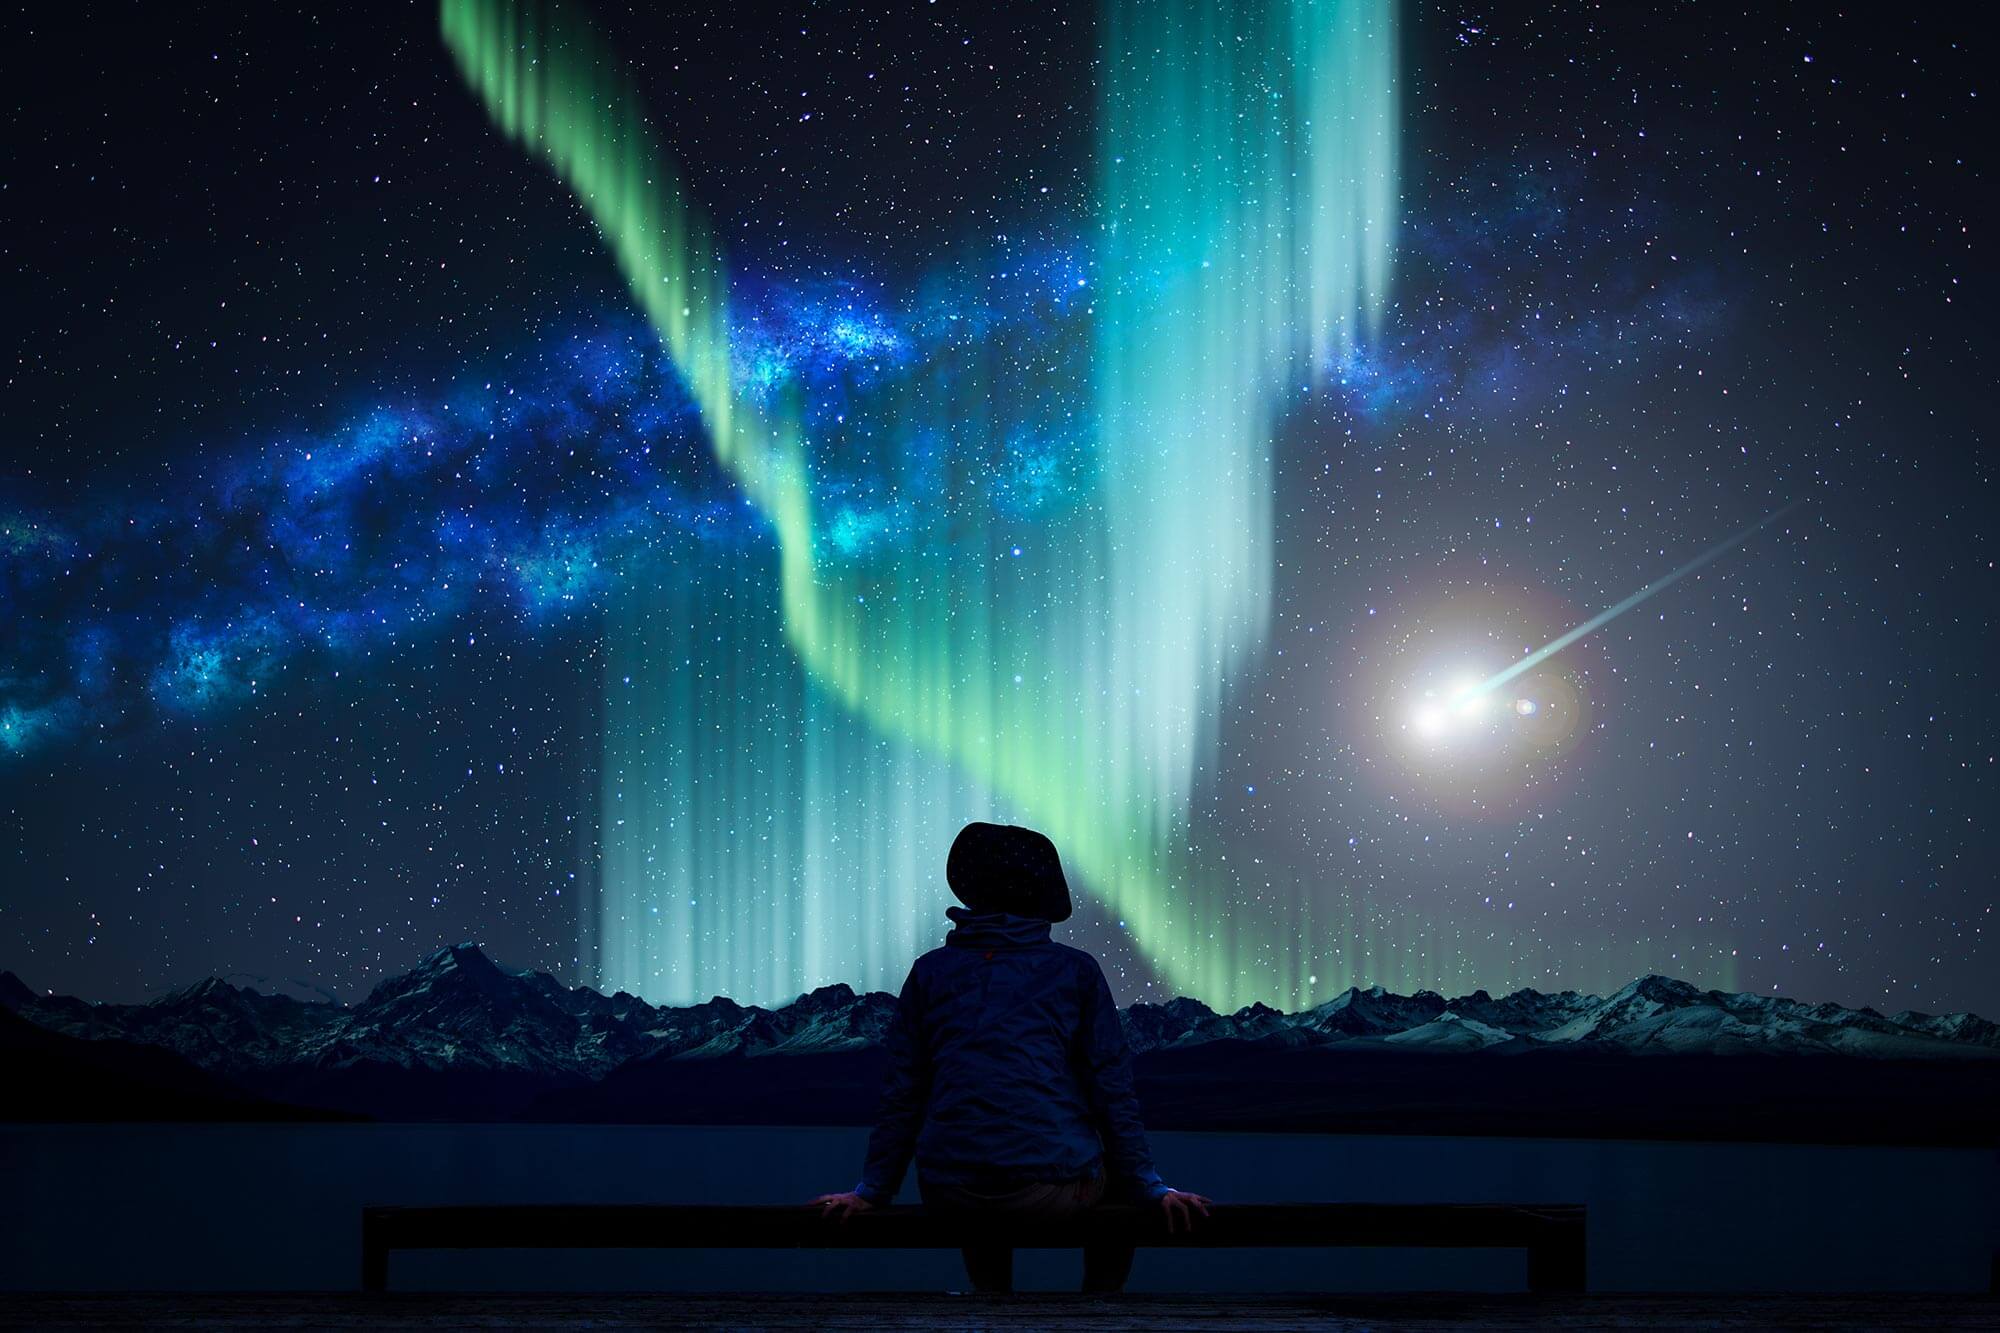 Garçon regardant les aurores boréales